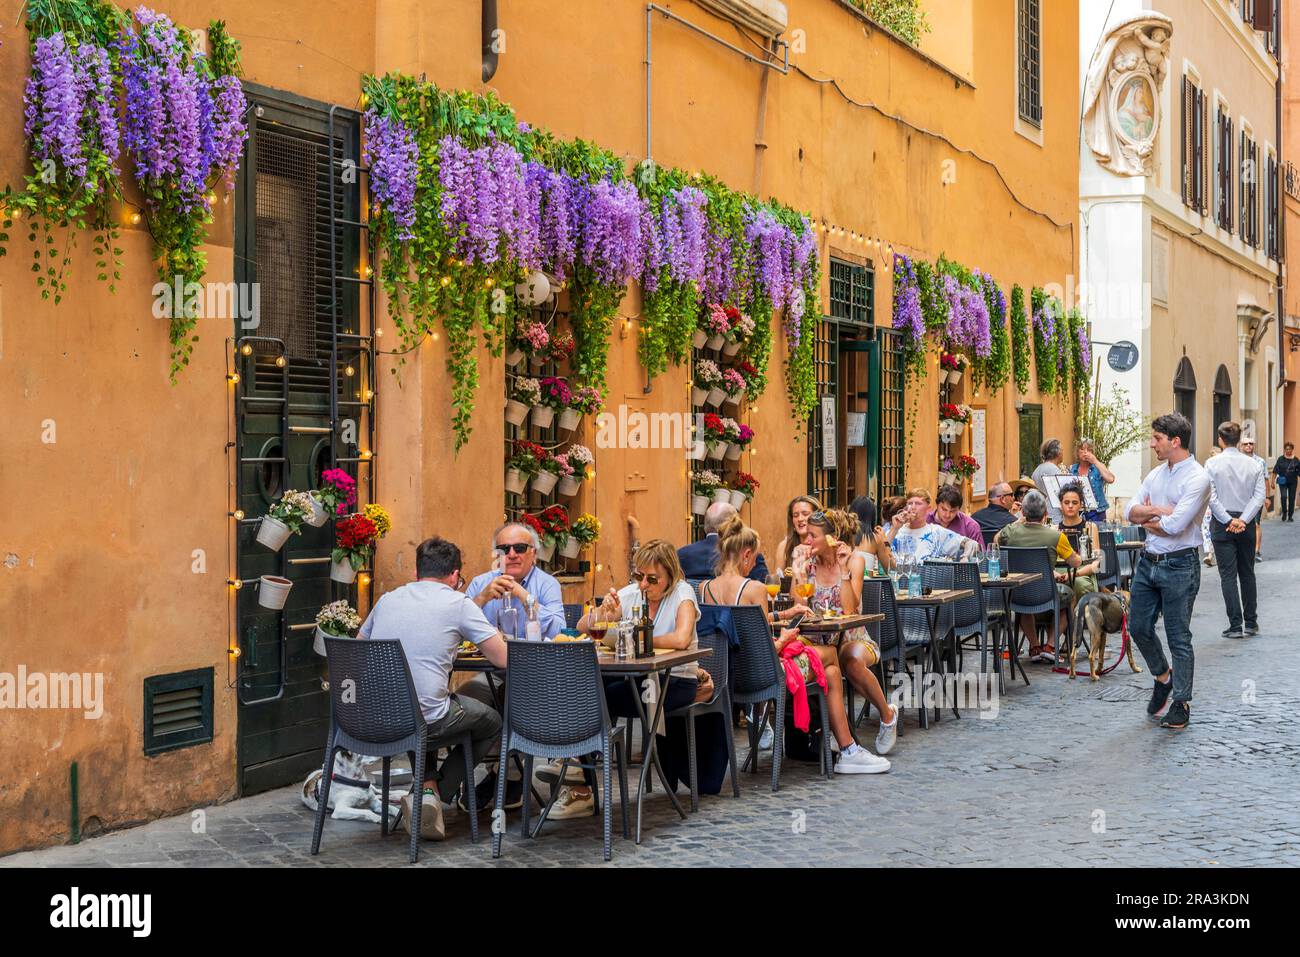 Ristorante caffetteria panoramico su marciapiede in una strada acciottolata, Roma, Lazio, Italia Foto Stock